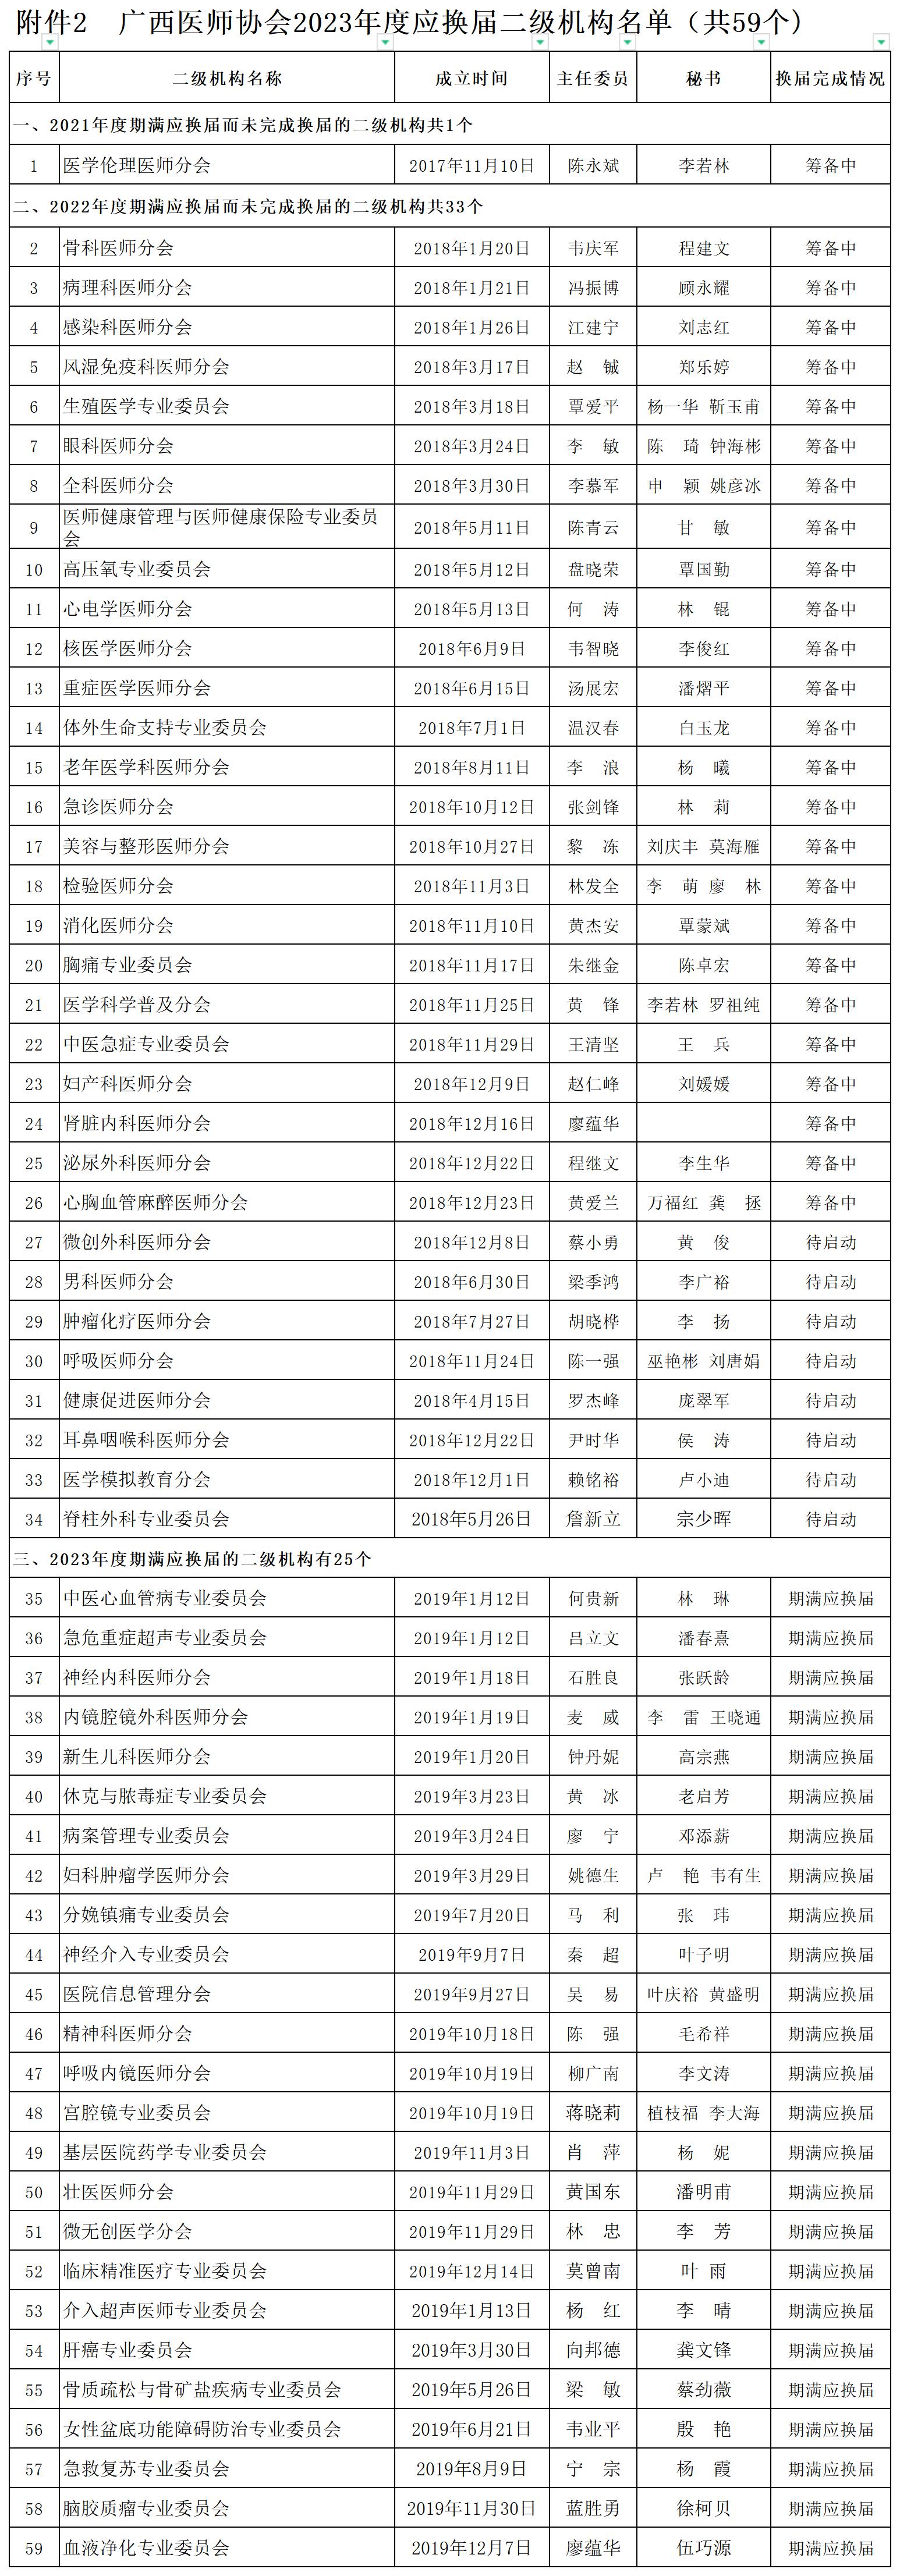 附件2 广西医师协会2023年度应换届二级机构名单（共59个）_附件2 2023年应换届二级机构名单.jpg